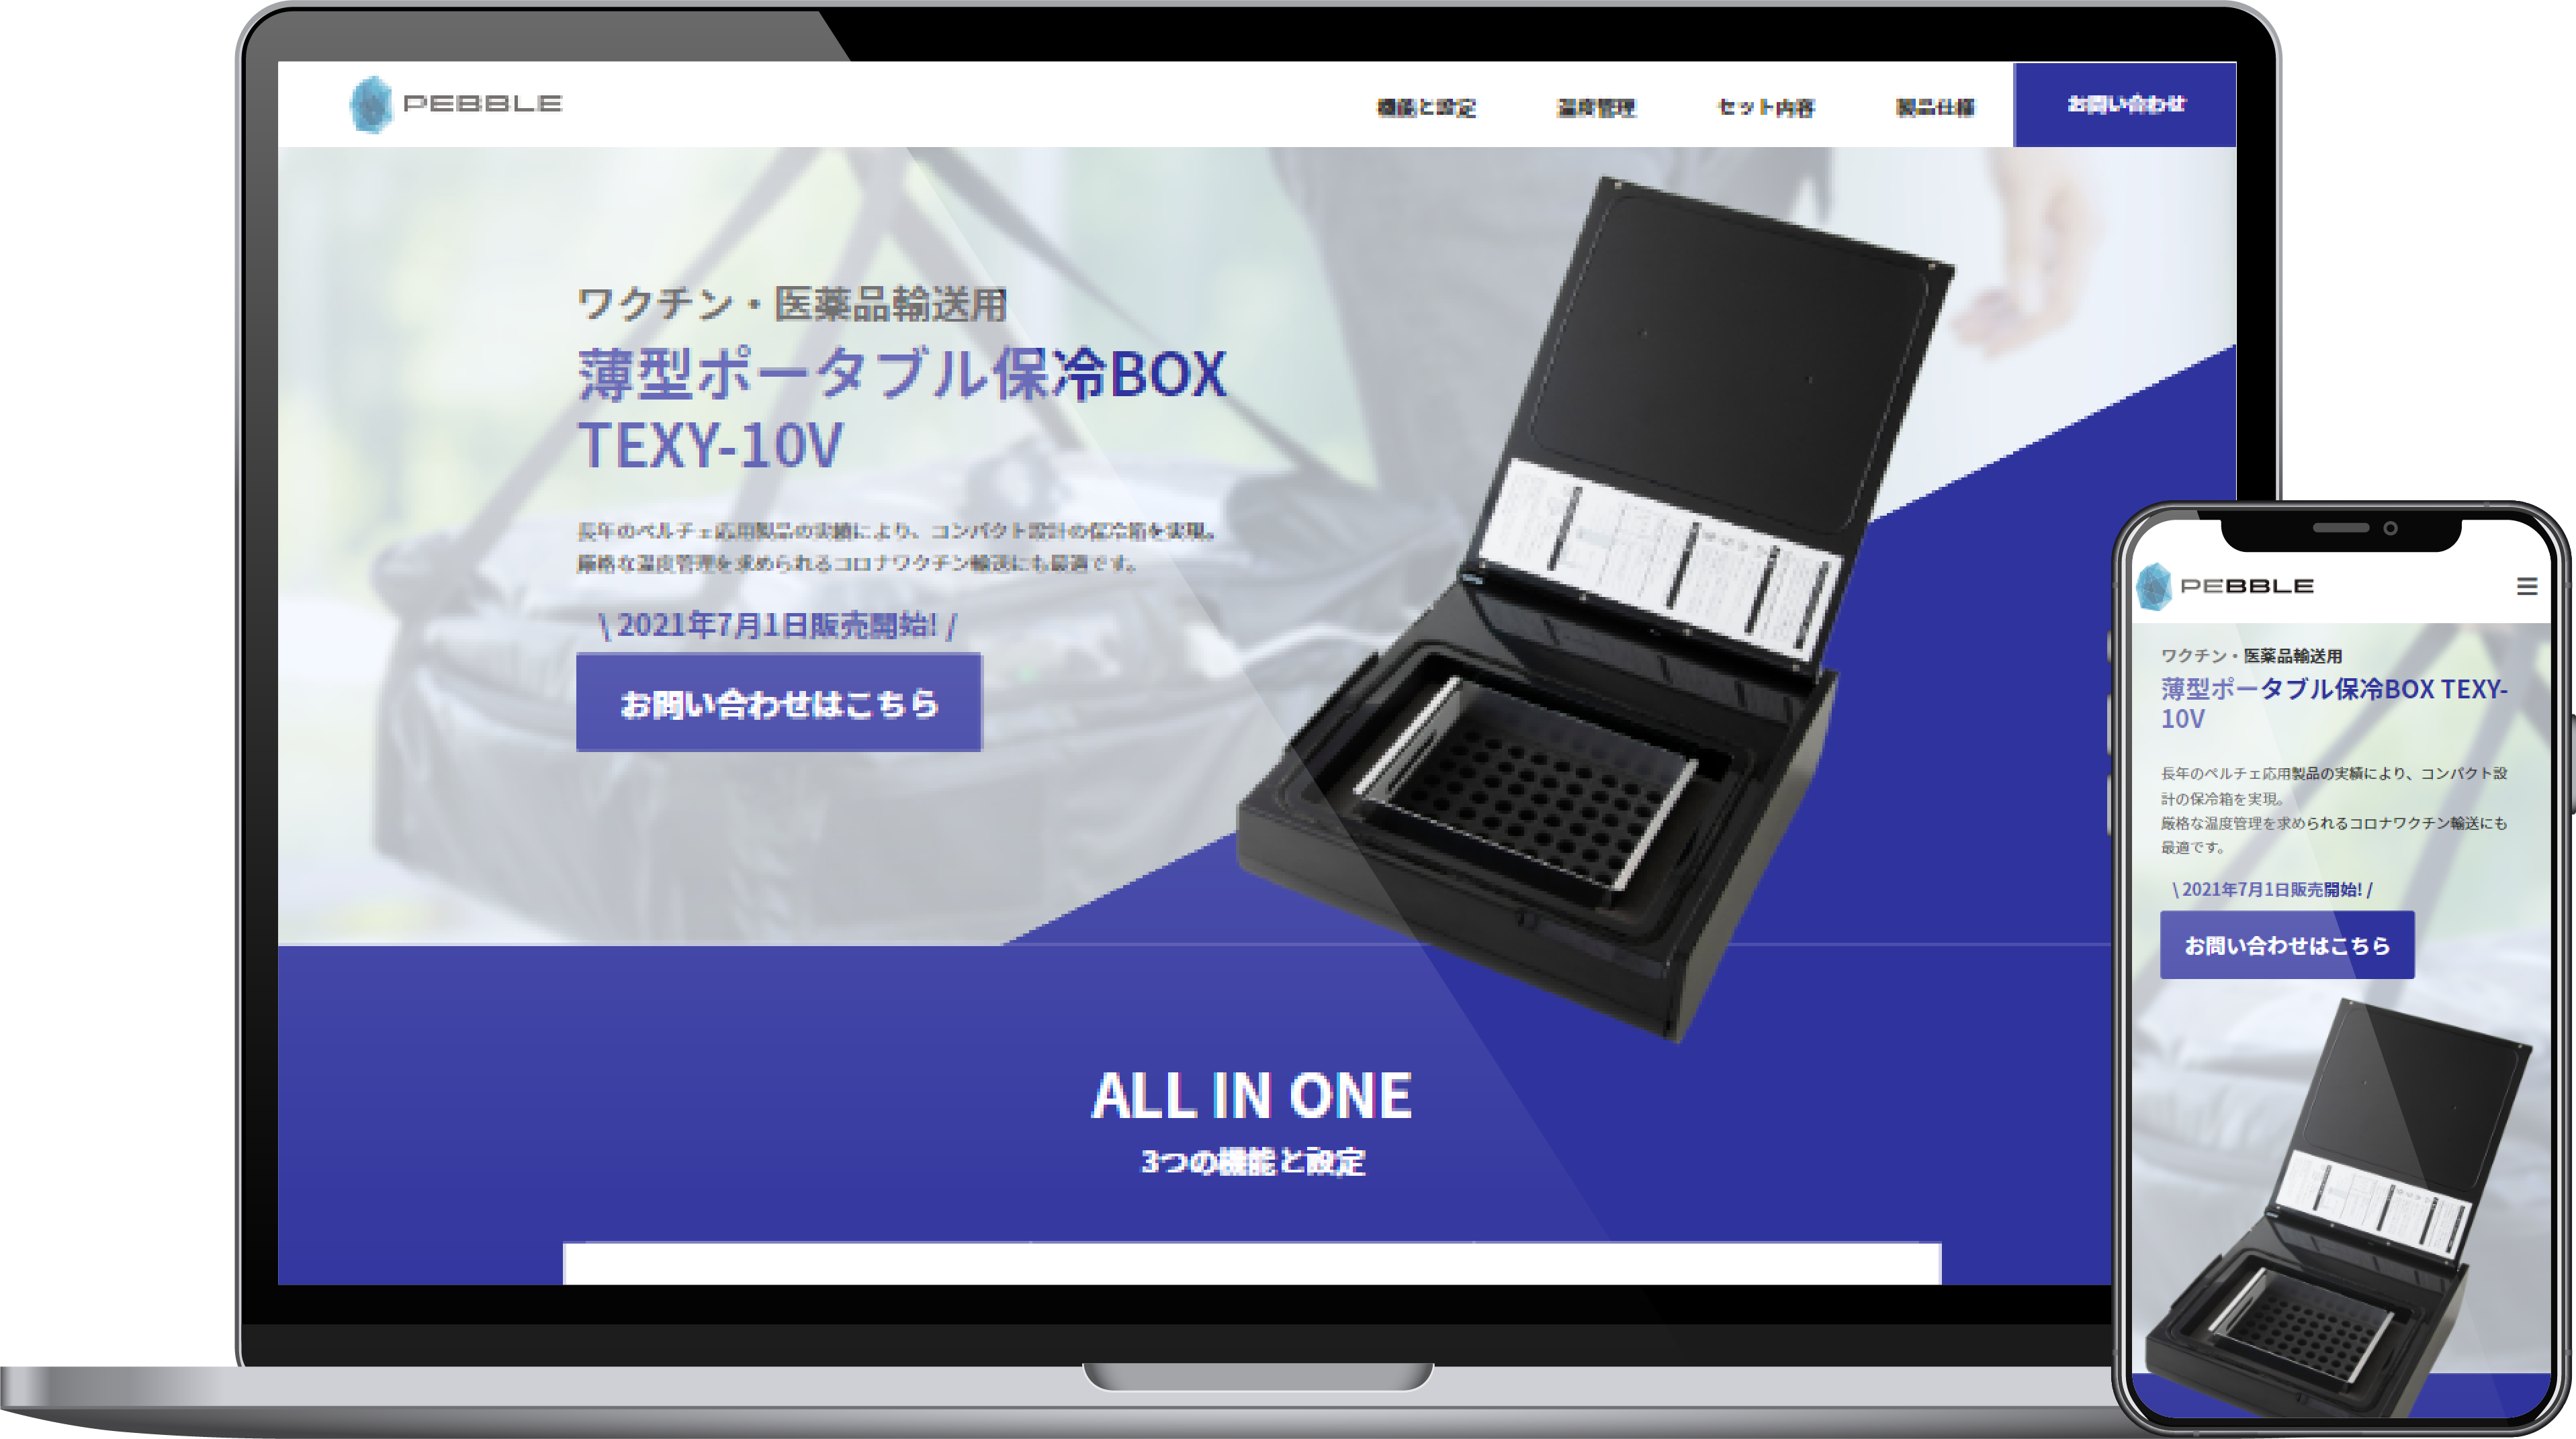 「薄型ポータブル保冷BOX TEXY-10V」製品サイト制作